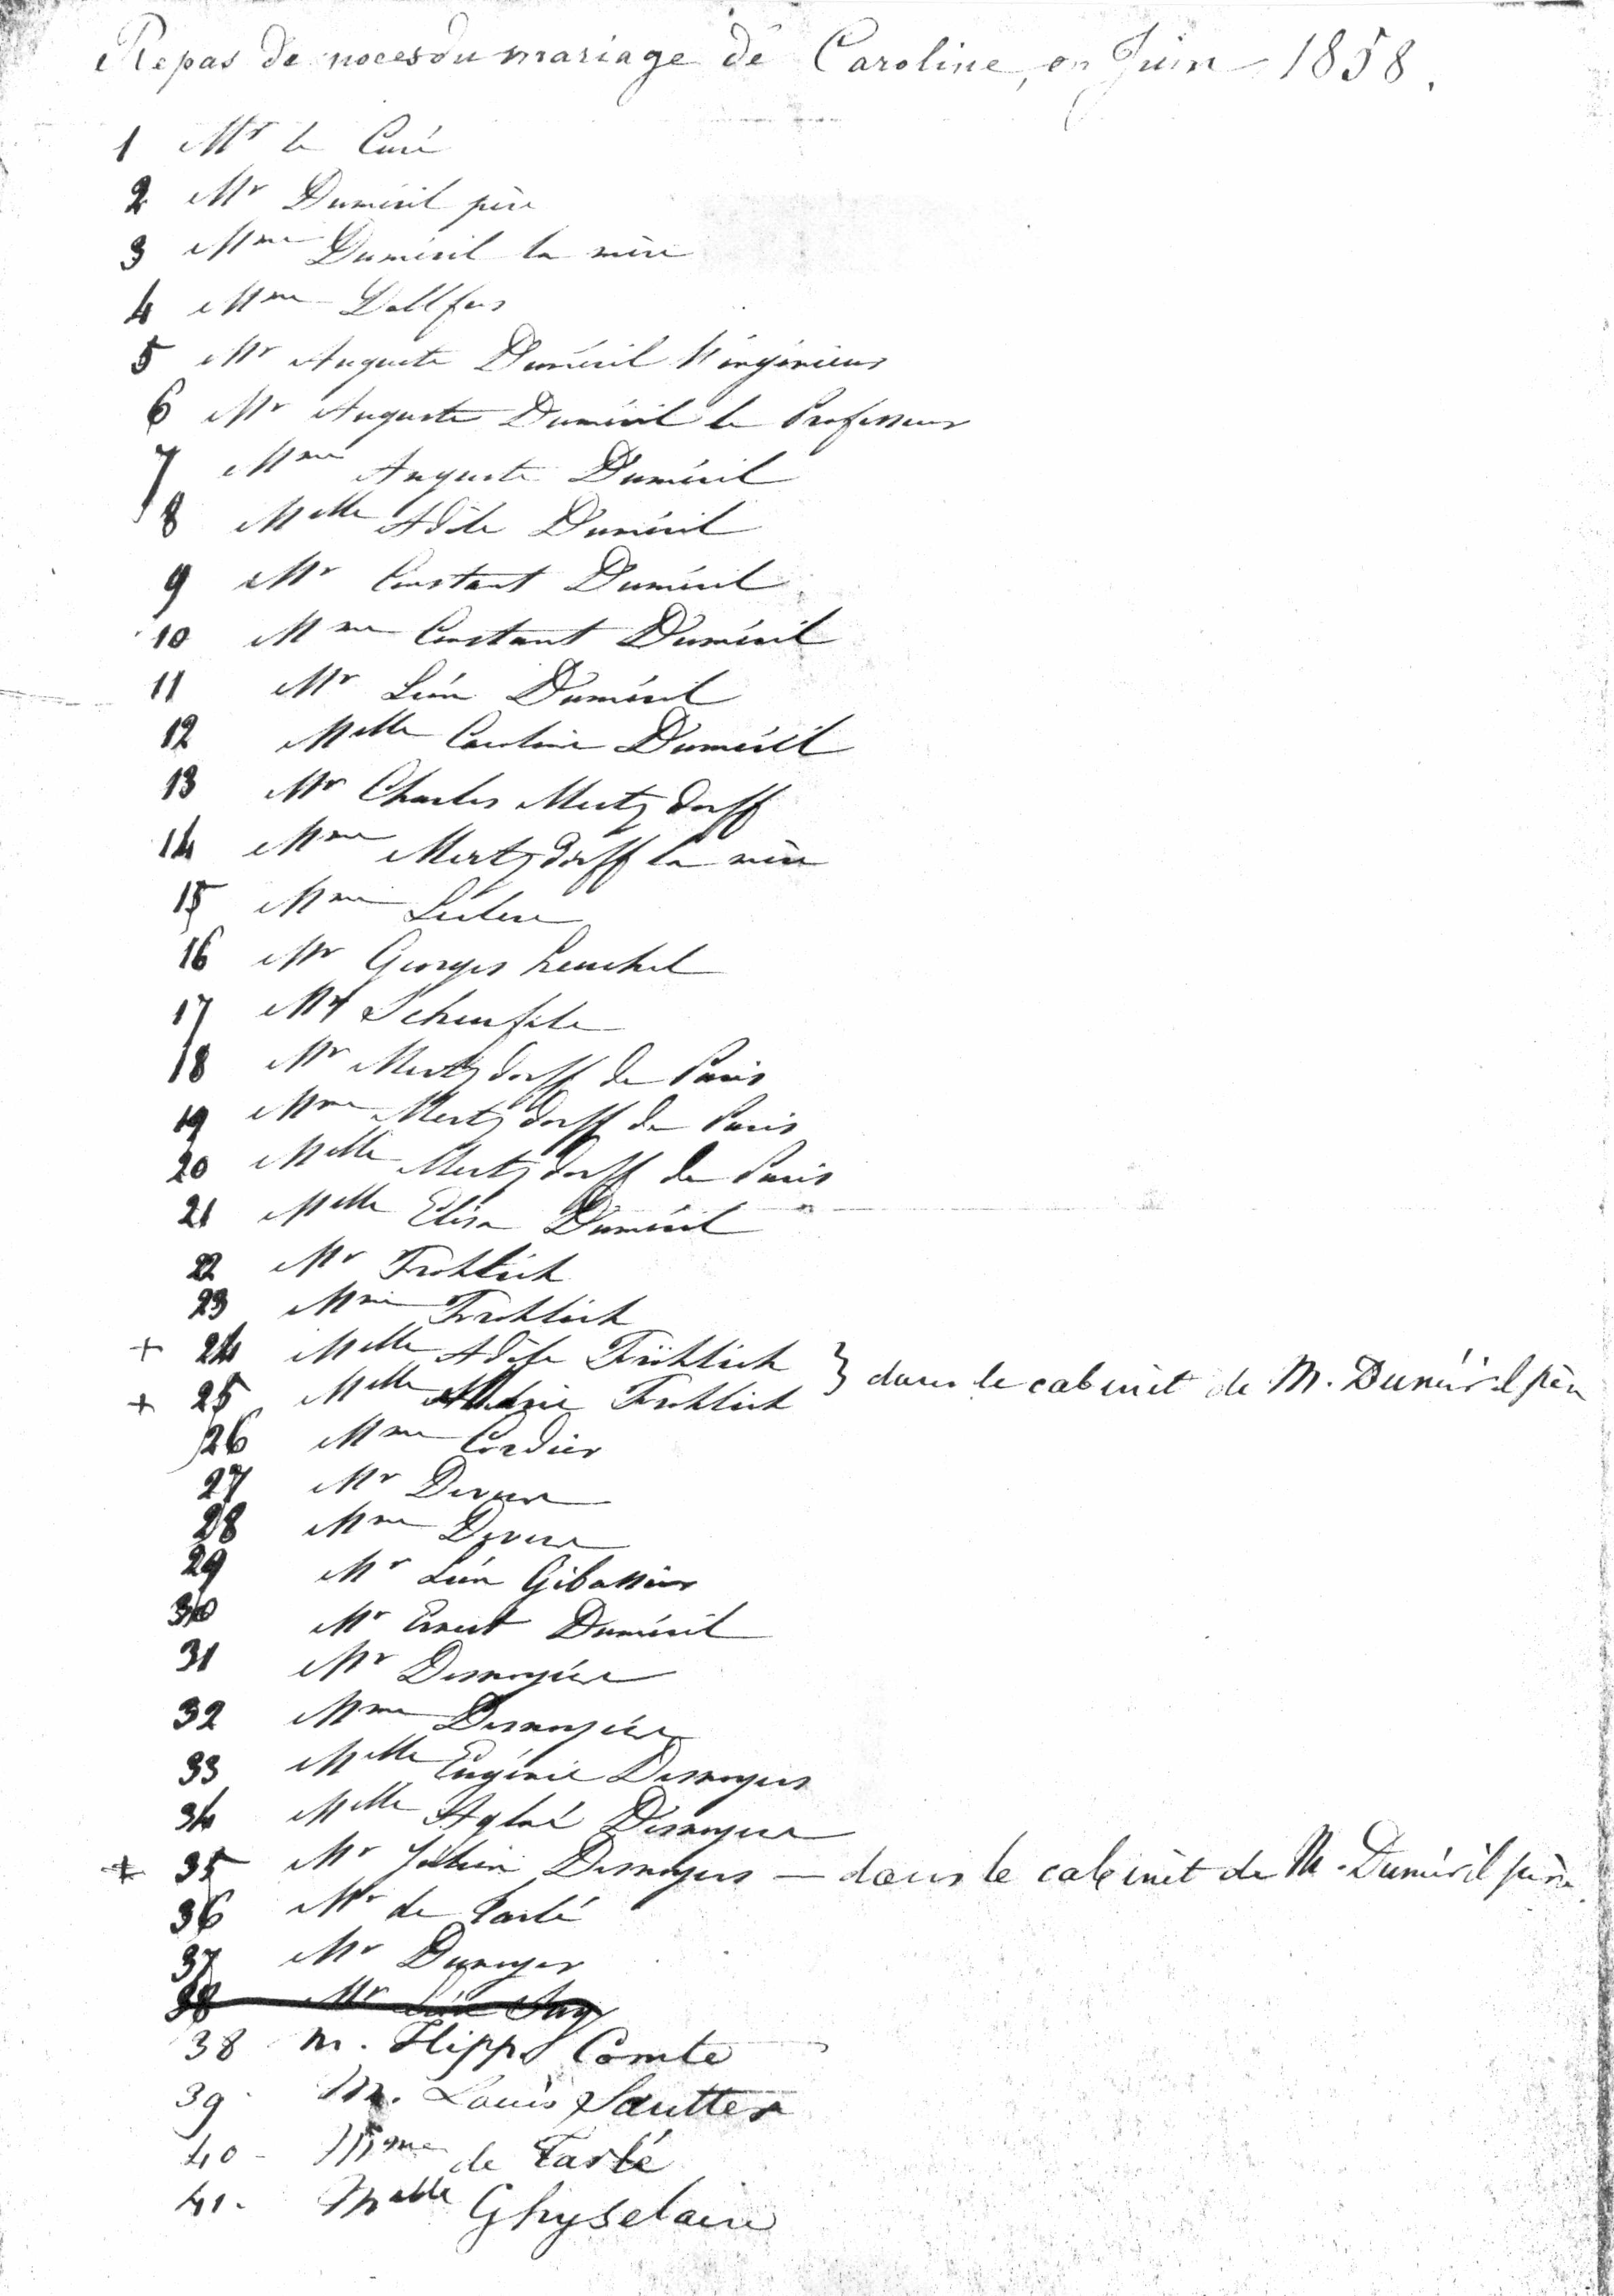 1858 Liste Des Invites Au Repas Du Mariage De Caroline Dumeril Et Charles Mertzdorff Le Mardi 15 Juin